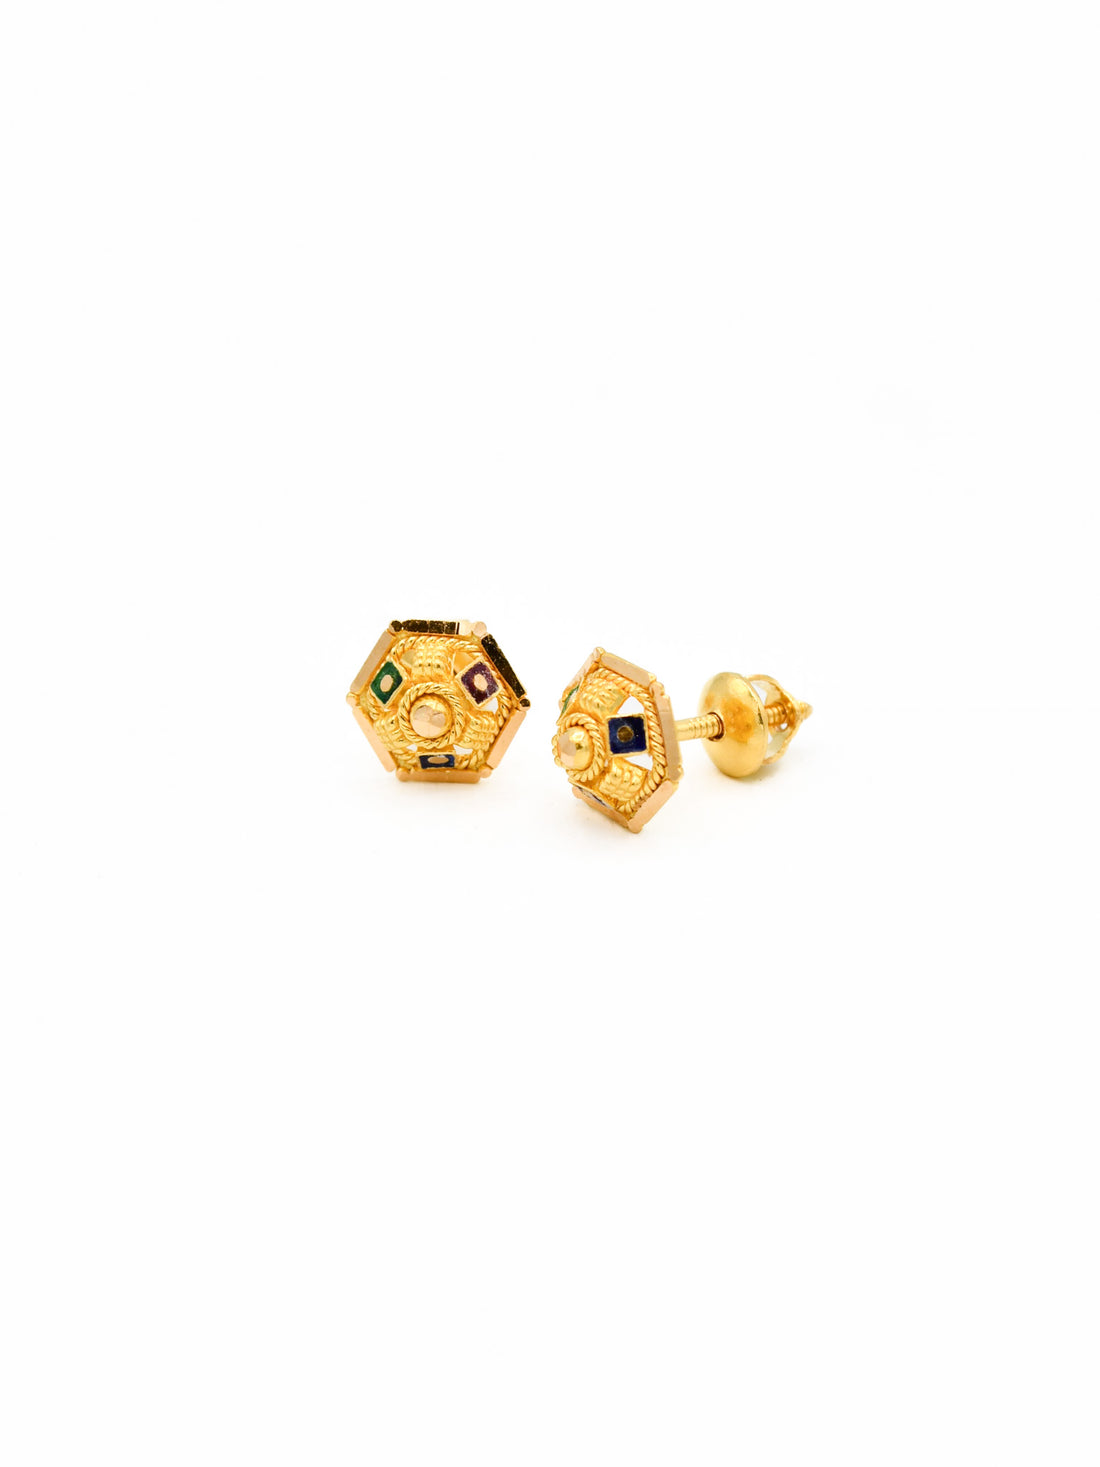 22ct Gold Mina Stud Earrings - Roop Darshan